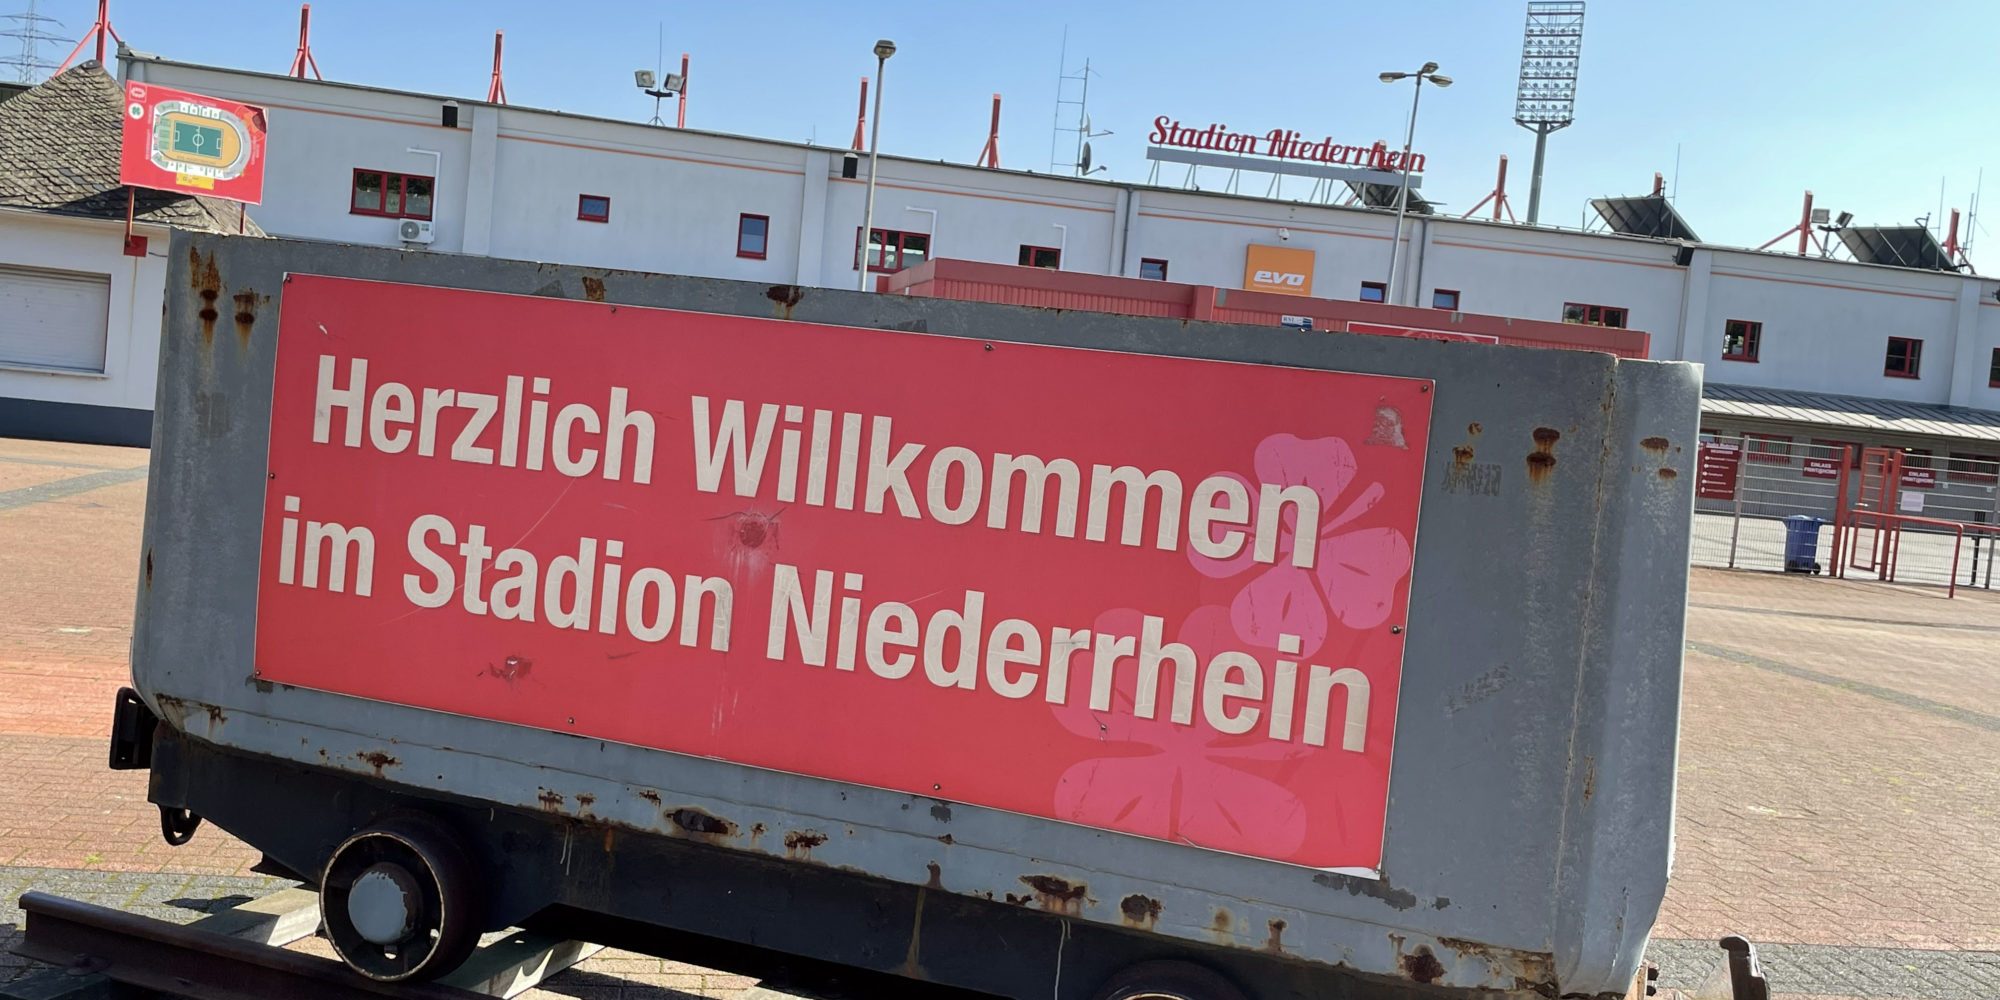 A imagem mostra um carro da mina em frente ao estádio Niederrhein em Oberhausen